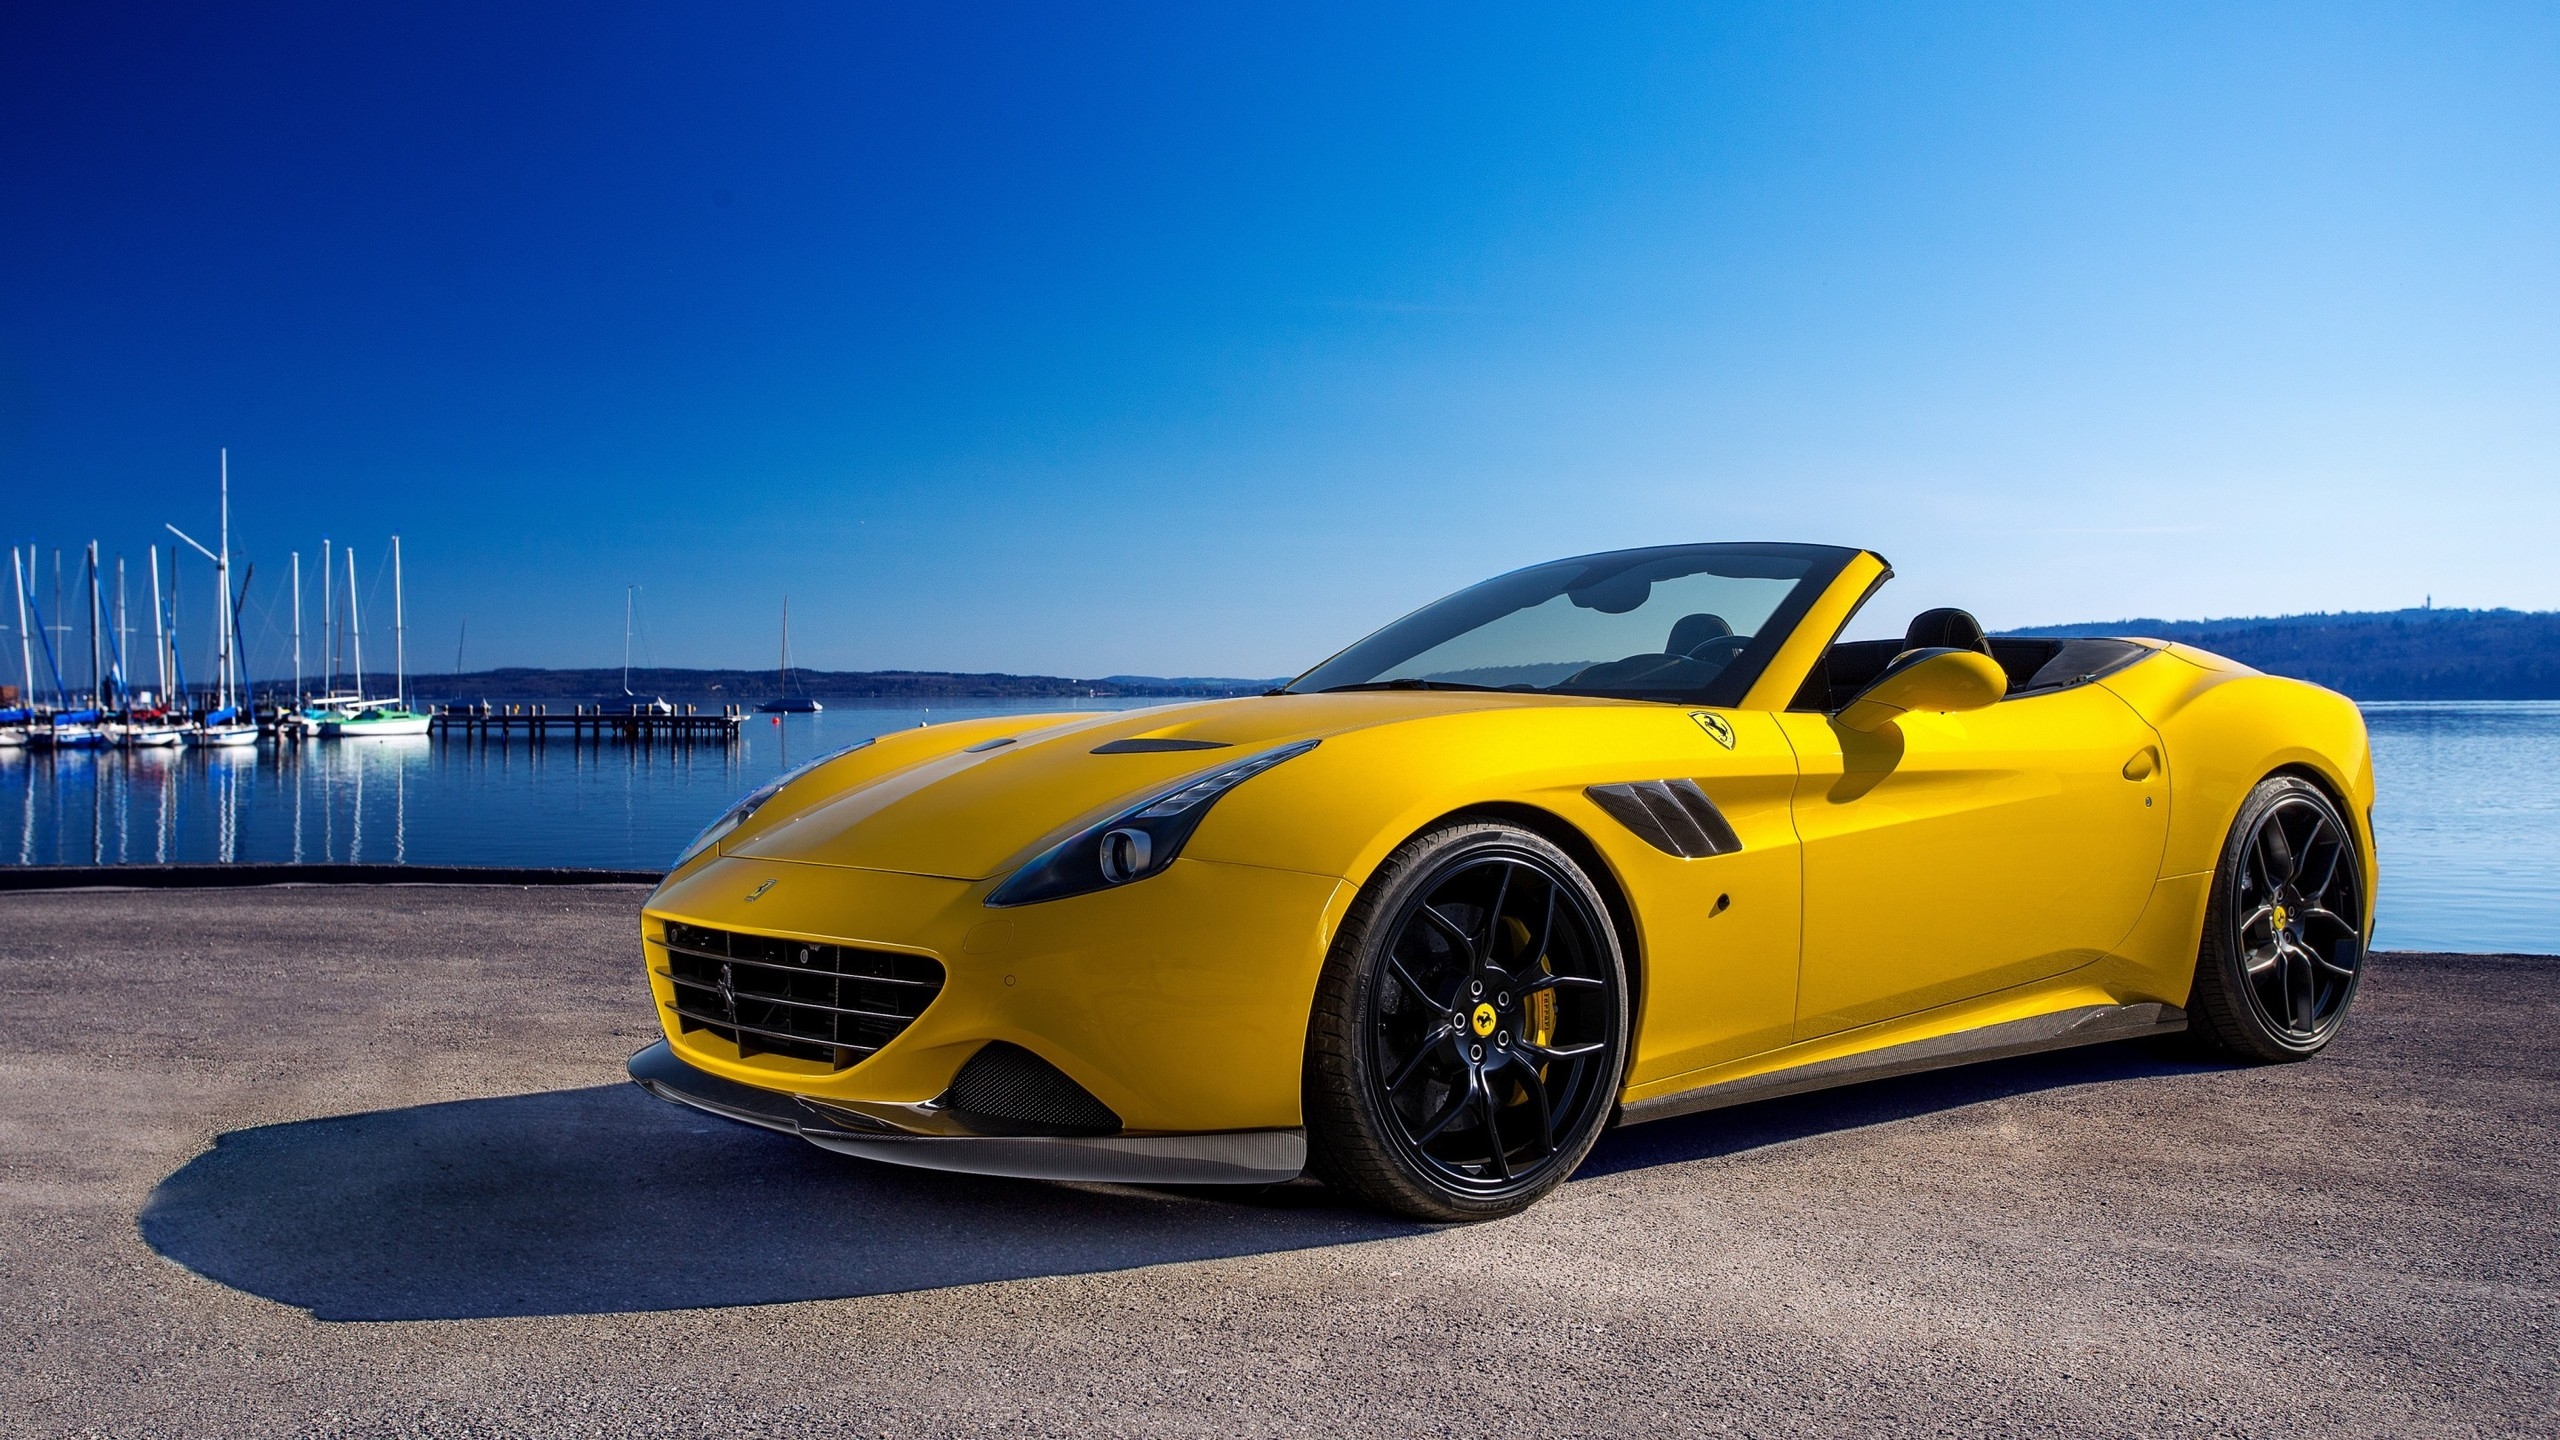 2015 Ferrari California T for 2560x1440 HDTV resolution